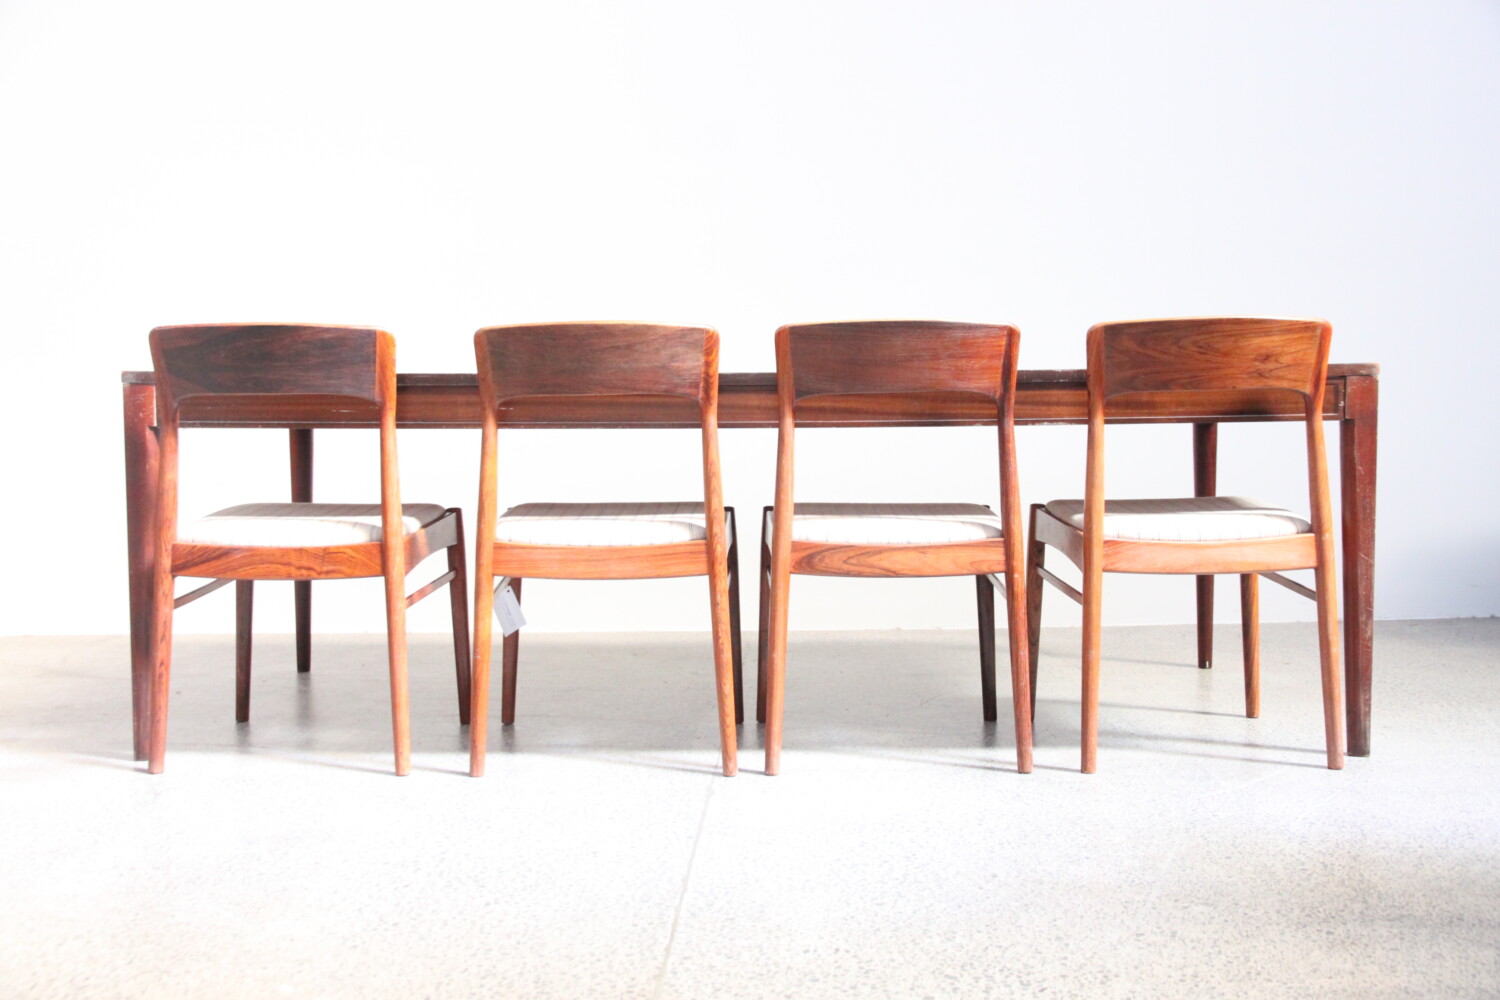 XL Table by Finn Juhl